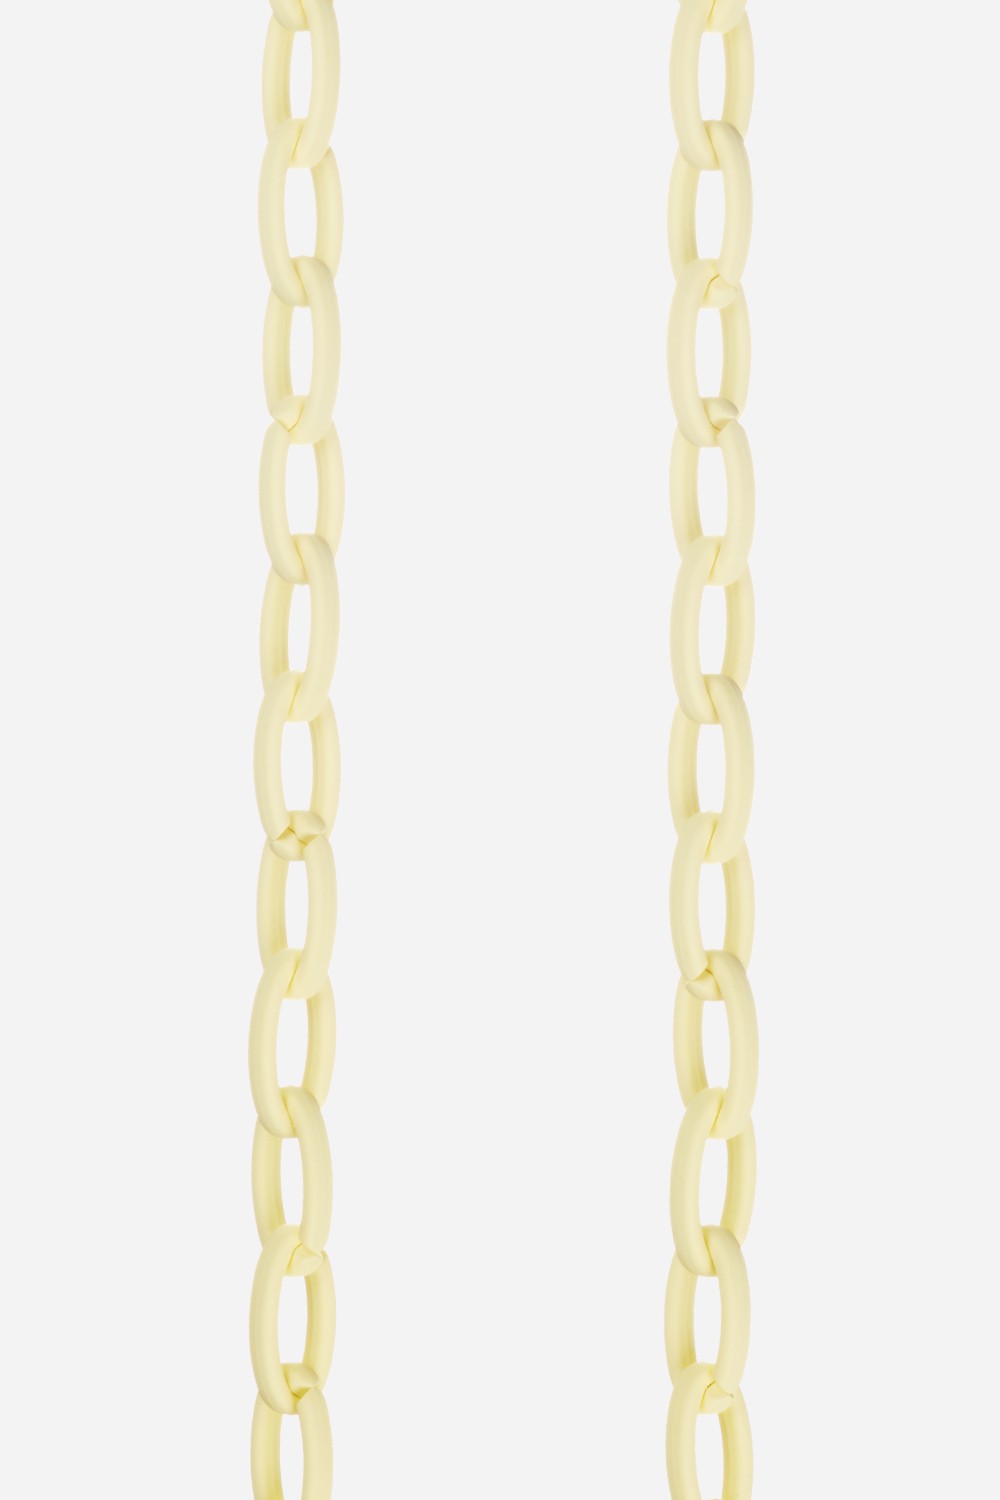 Zoe Yellow Long Chain 120 cm